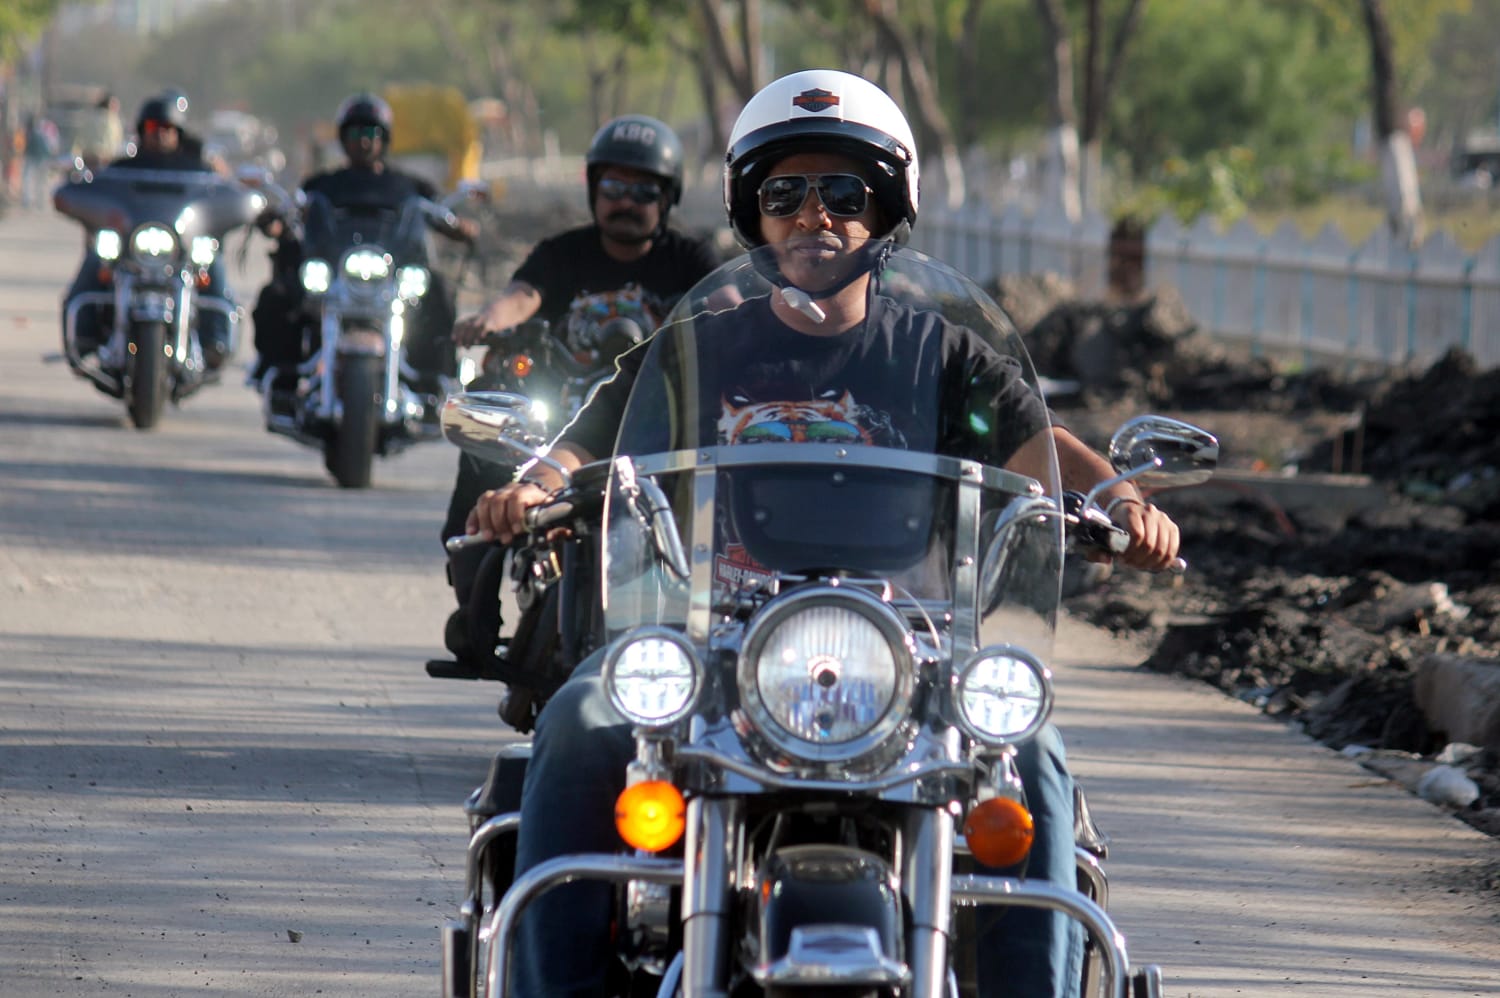 Harley-Davidson fights for a bigger slice of India's huge motorcycle market